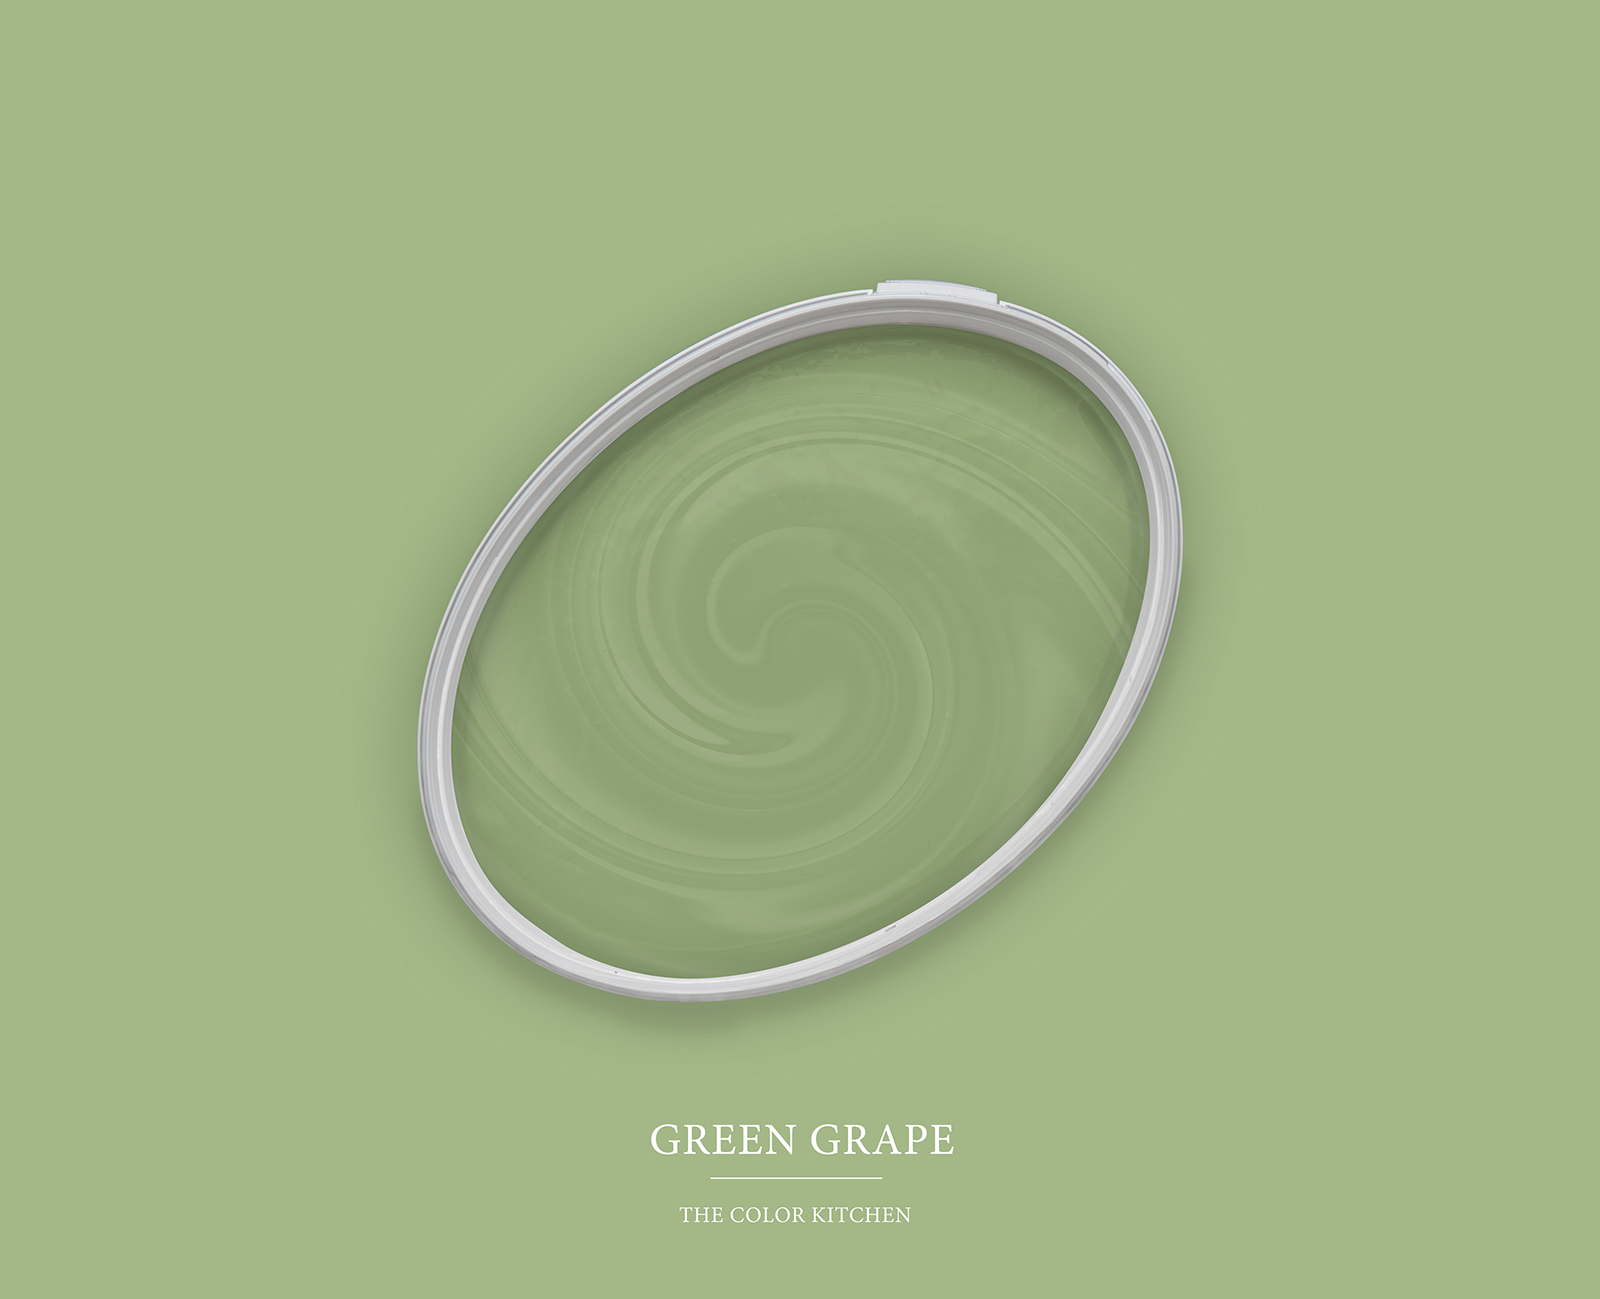 Wandfarbe in lebendigem Grün »Green Grape« TCK4008 – 2,5 Liter
